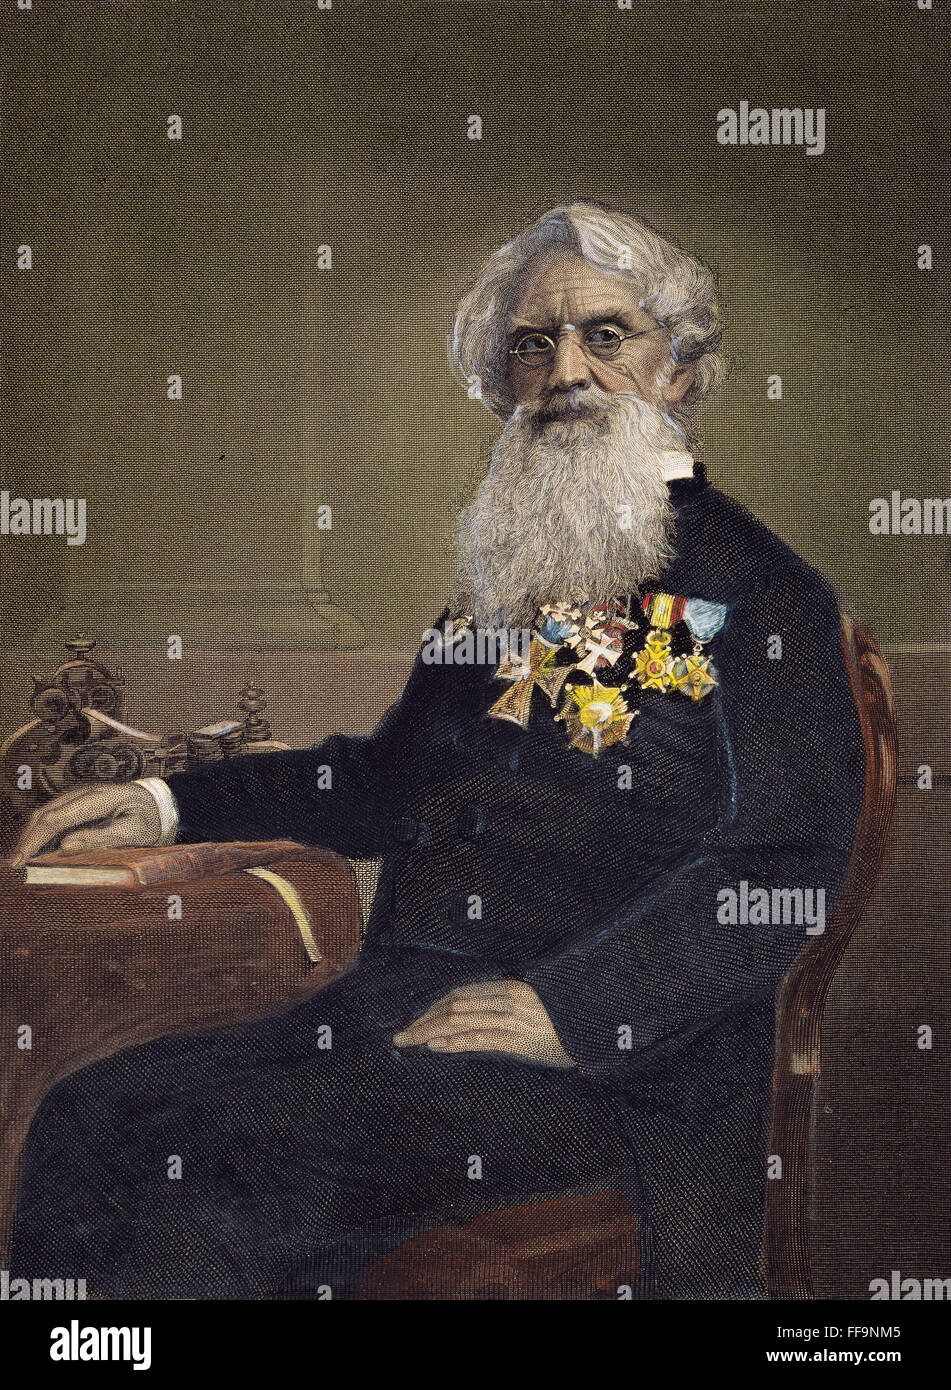 SAMUEL P.C. MORSE (1791-1872). /NAmerican artista e inventore. Incisione a colori, 1872. Foto Stock